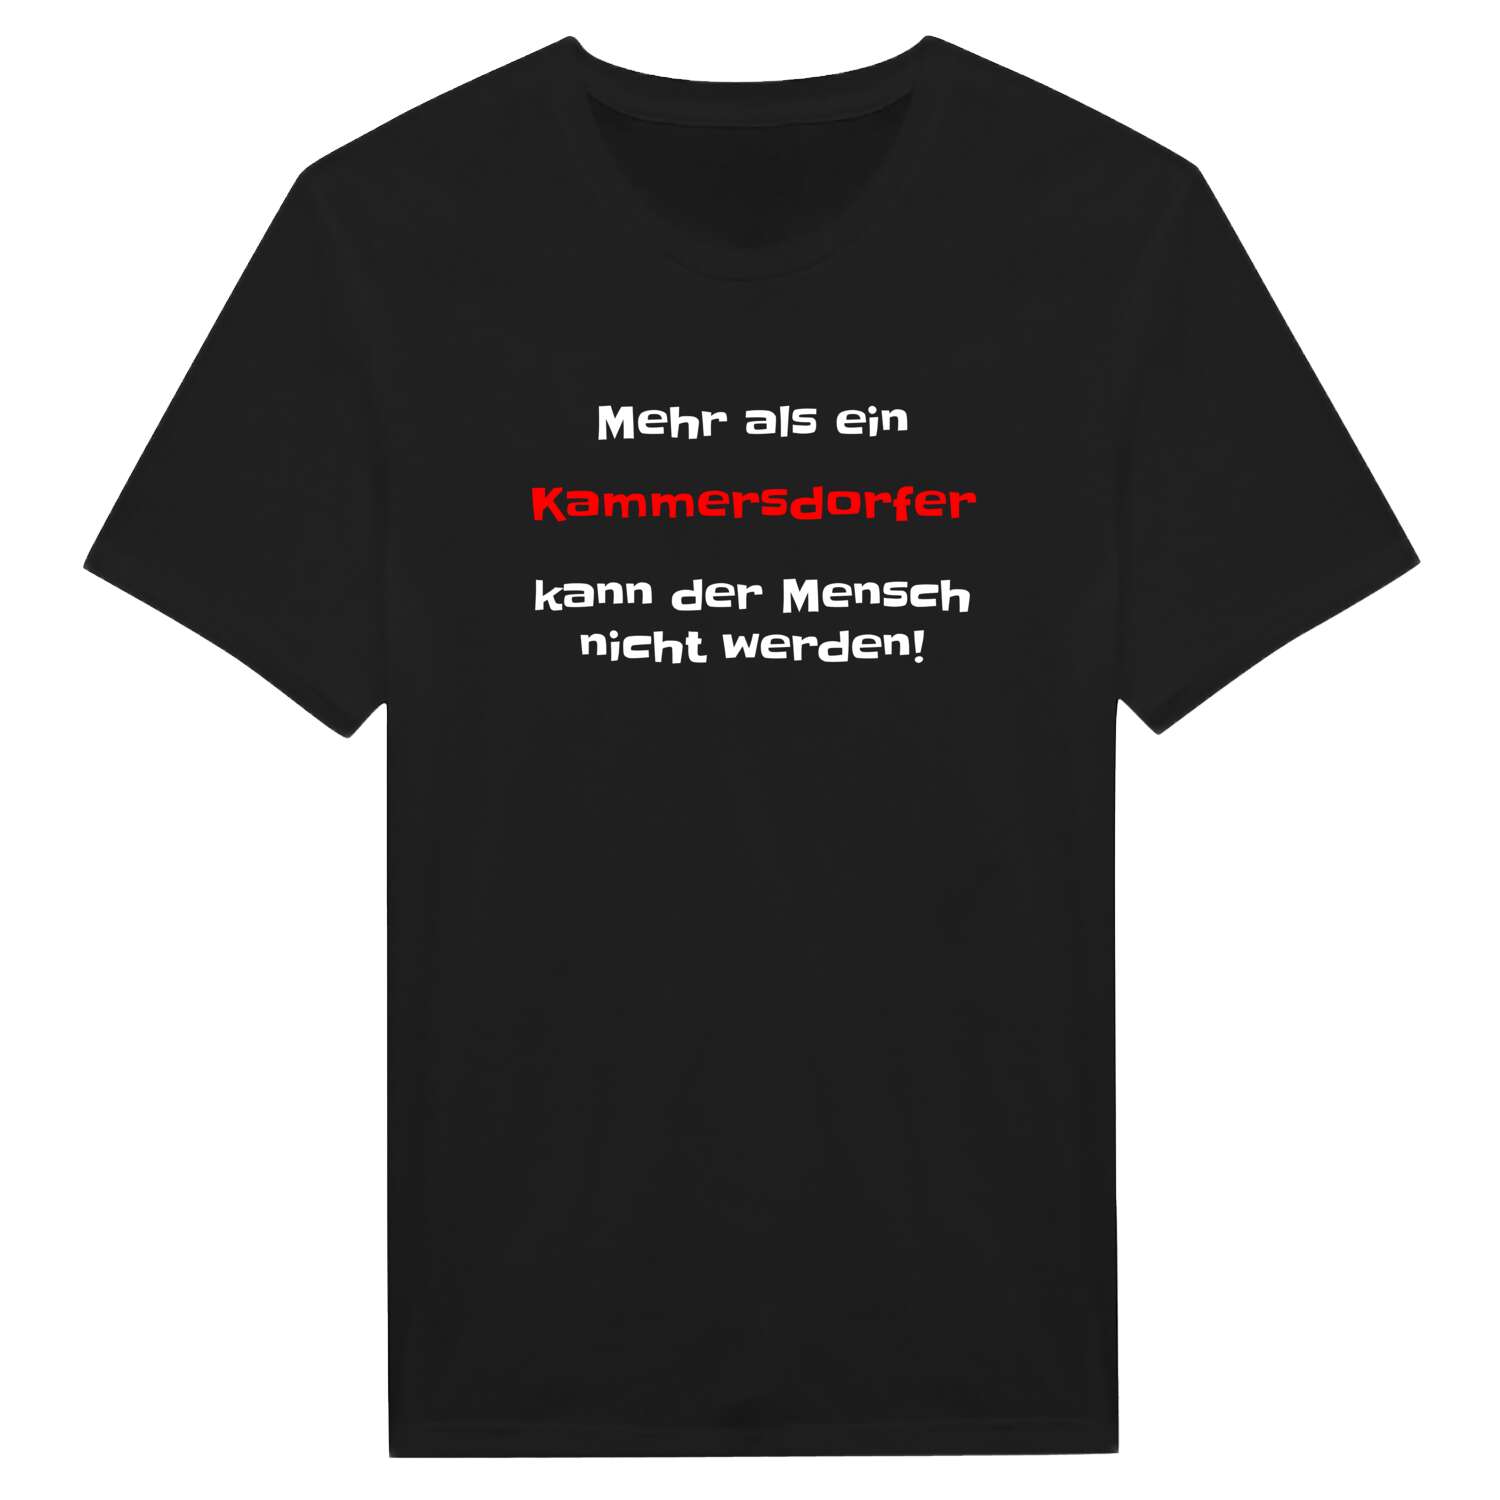 Kammersdorf T-Shirt »Mehr als ein«